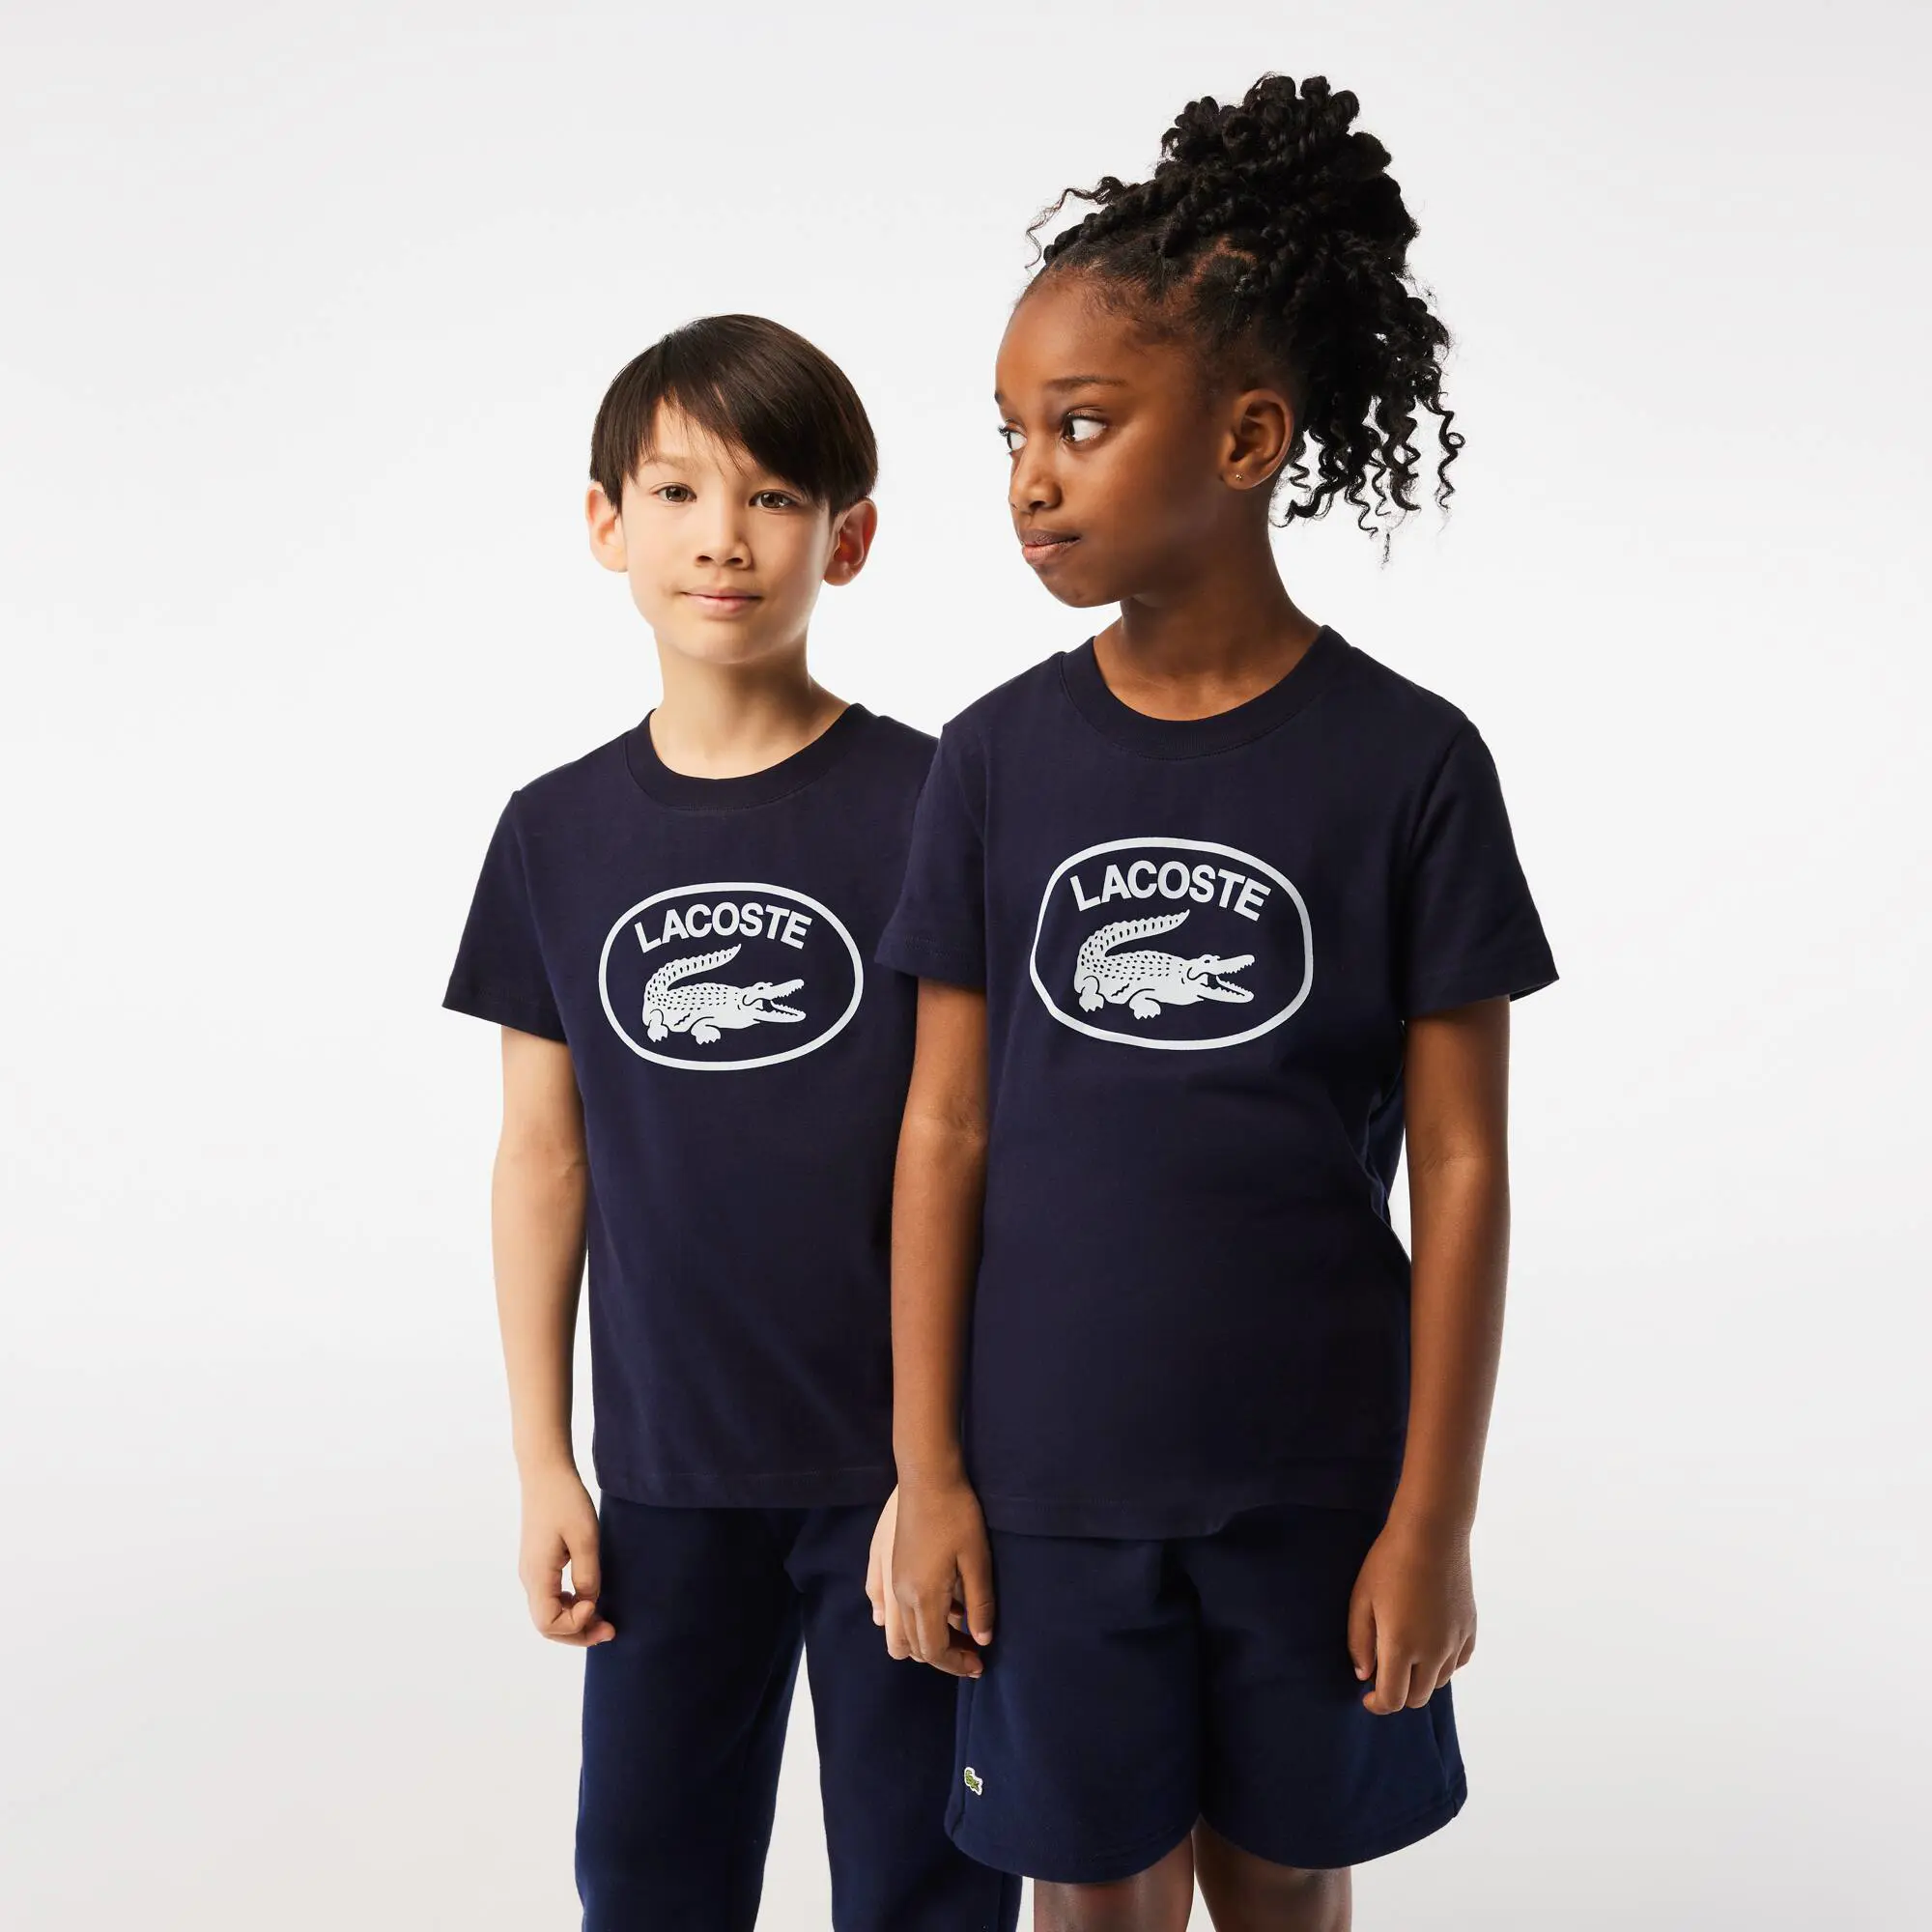 Lacoste T-shirt em malha de algodão com marca em contraste Lacoste para criança. 1